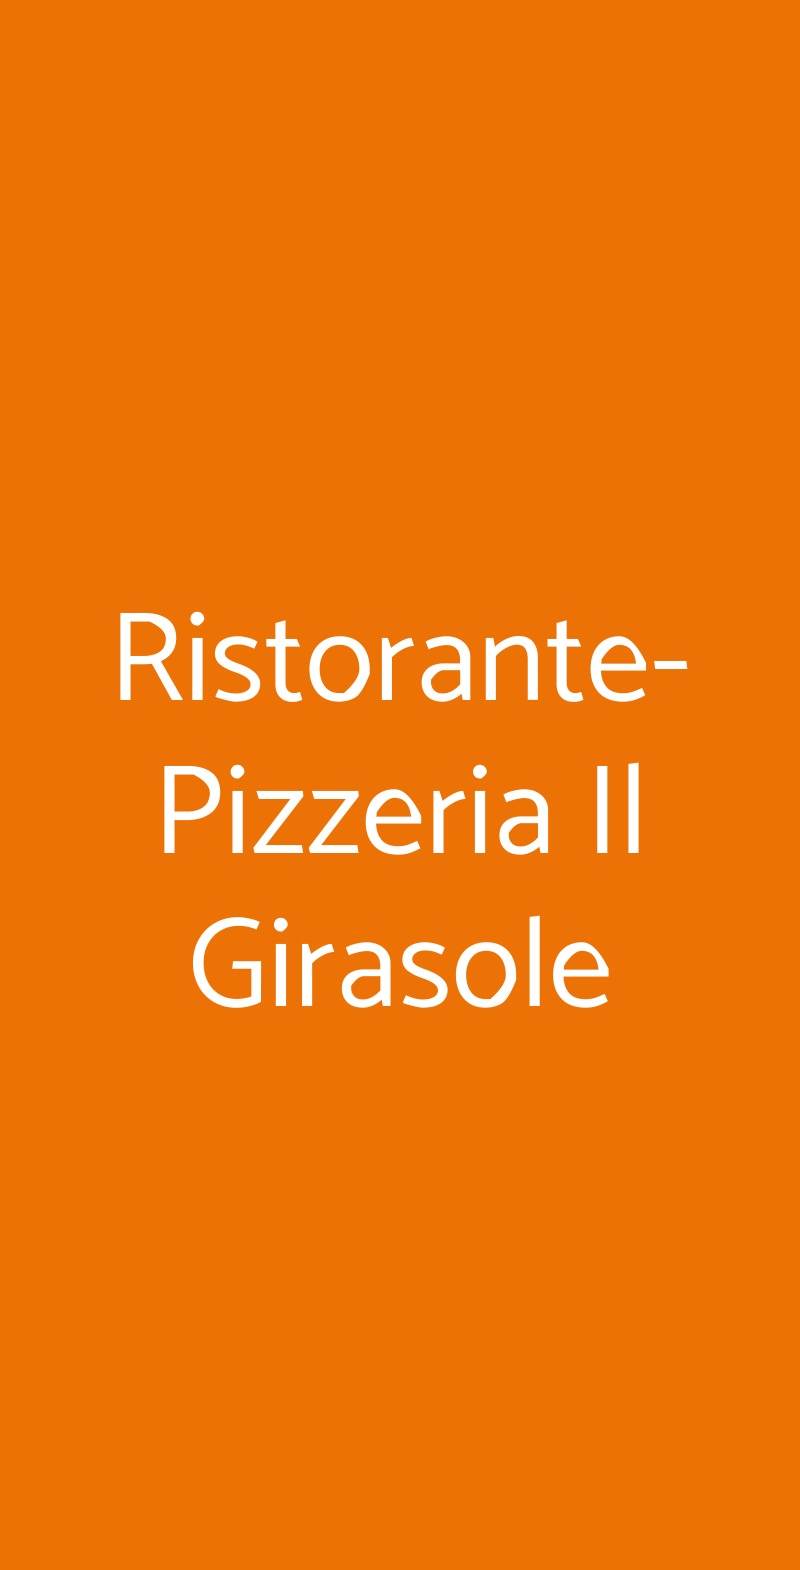 Ristorante-Pizzeria Il Girasole Roma menù 1 pagina